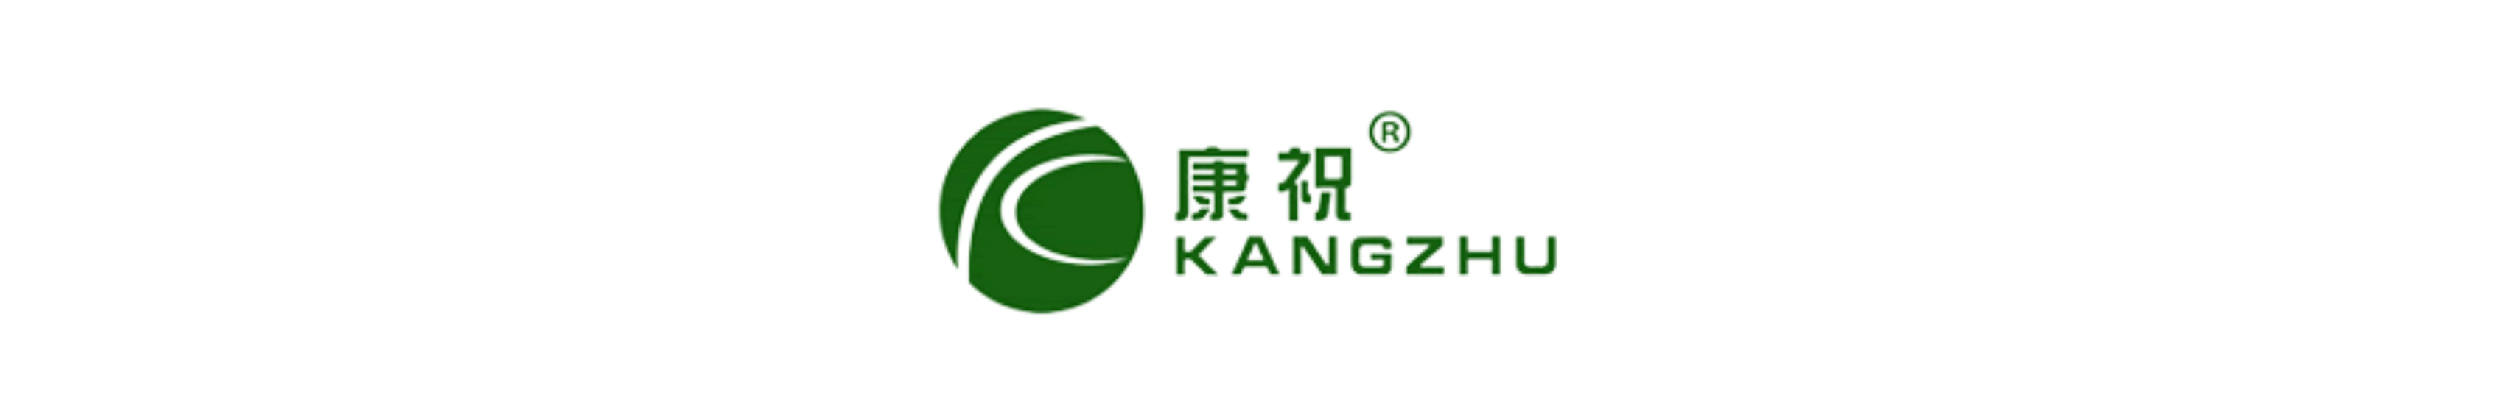 Kangzhu